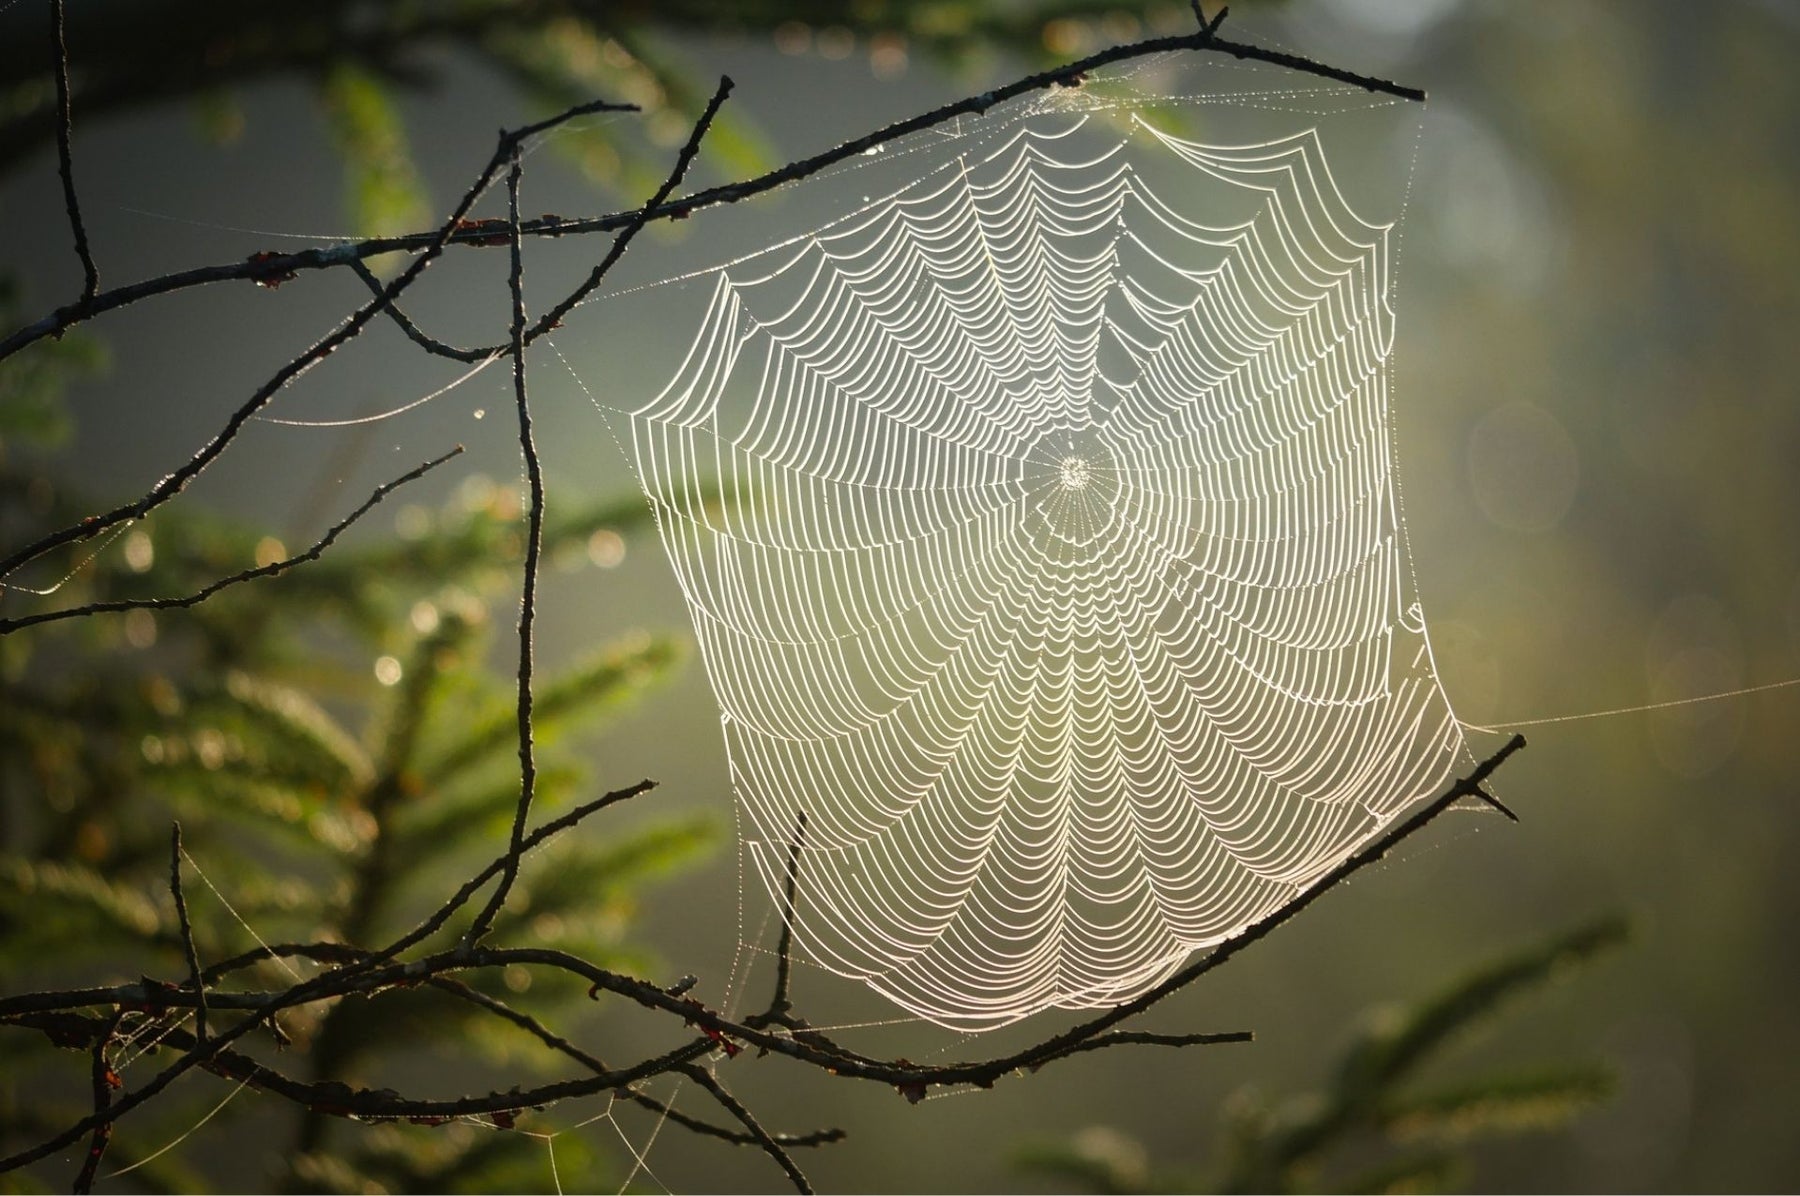 Spinnennetz in der Natur